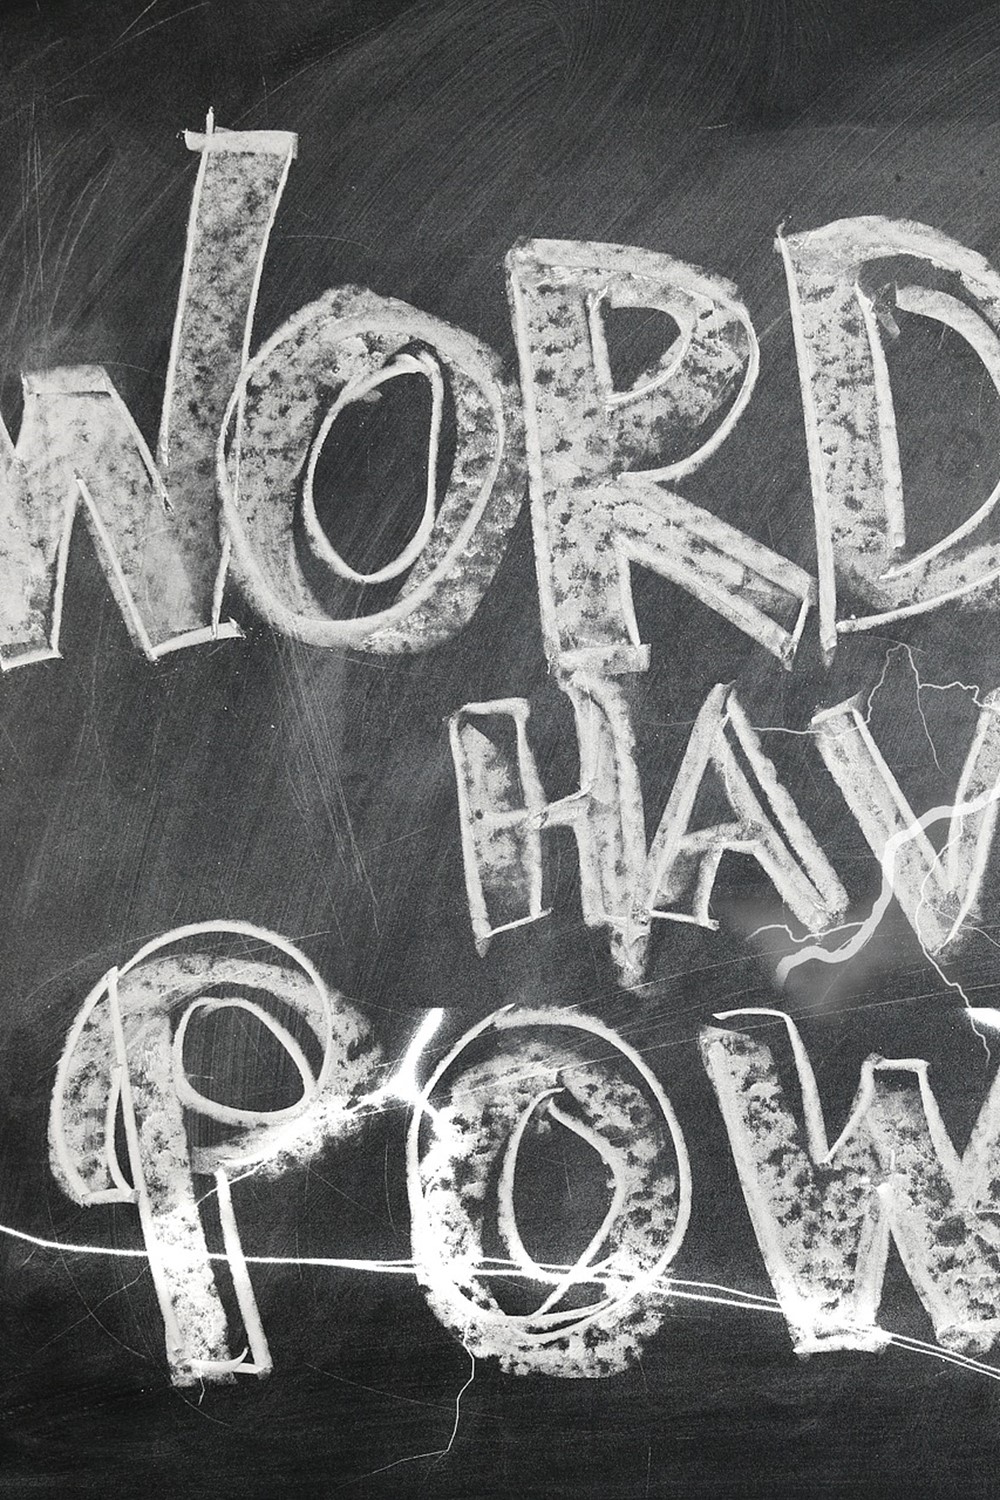 "Words have power" på tavle